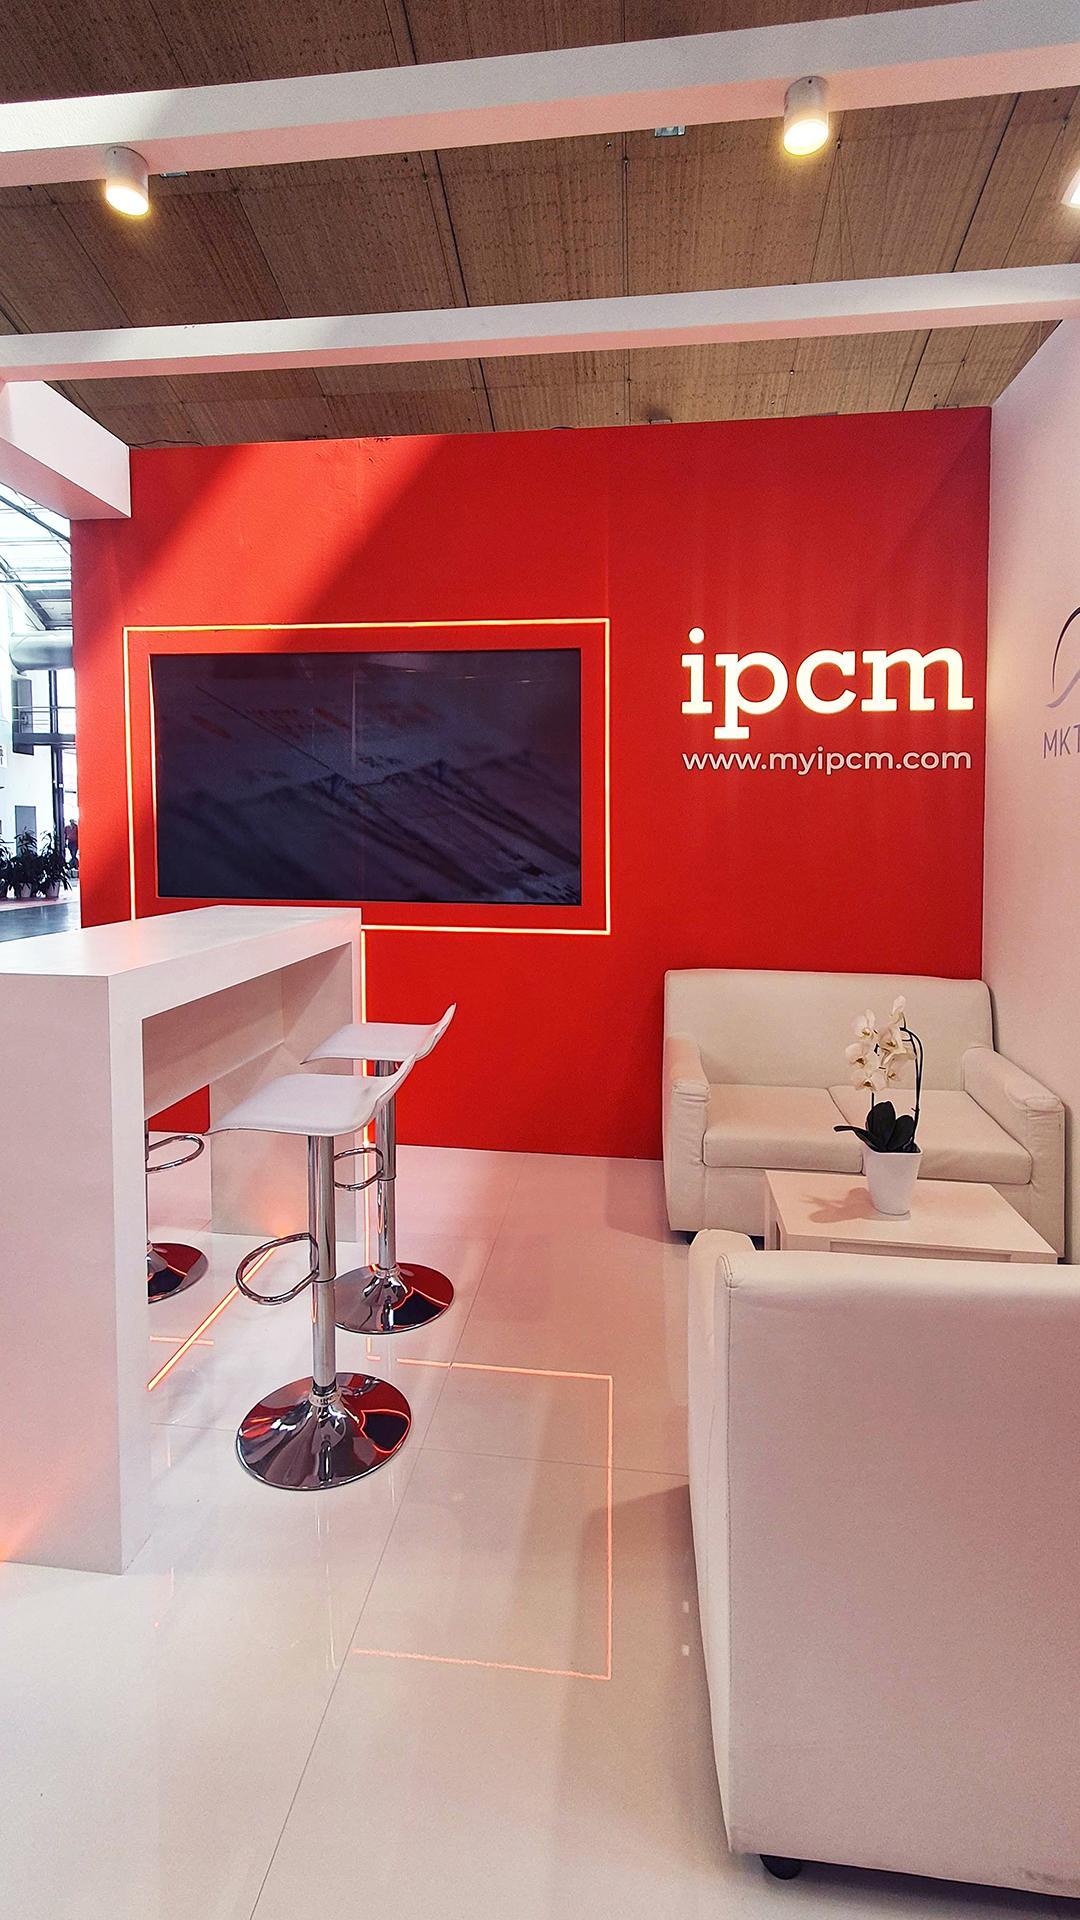 ipcm paint expo